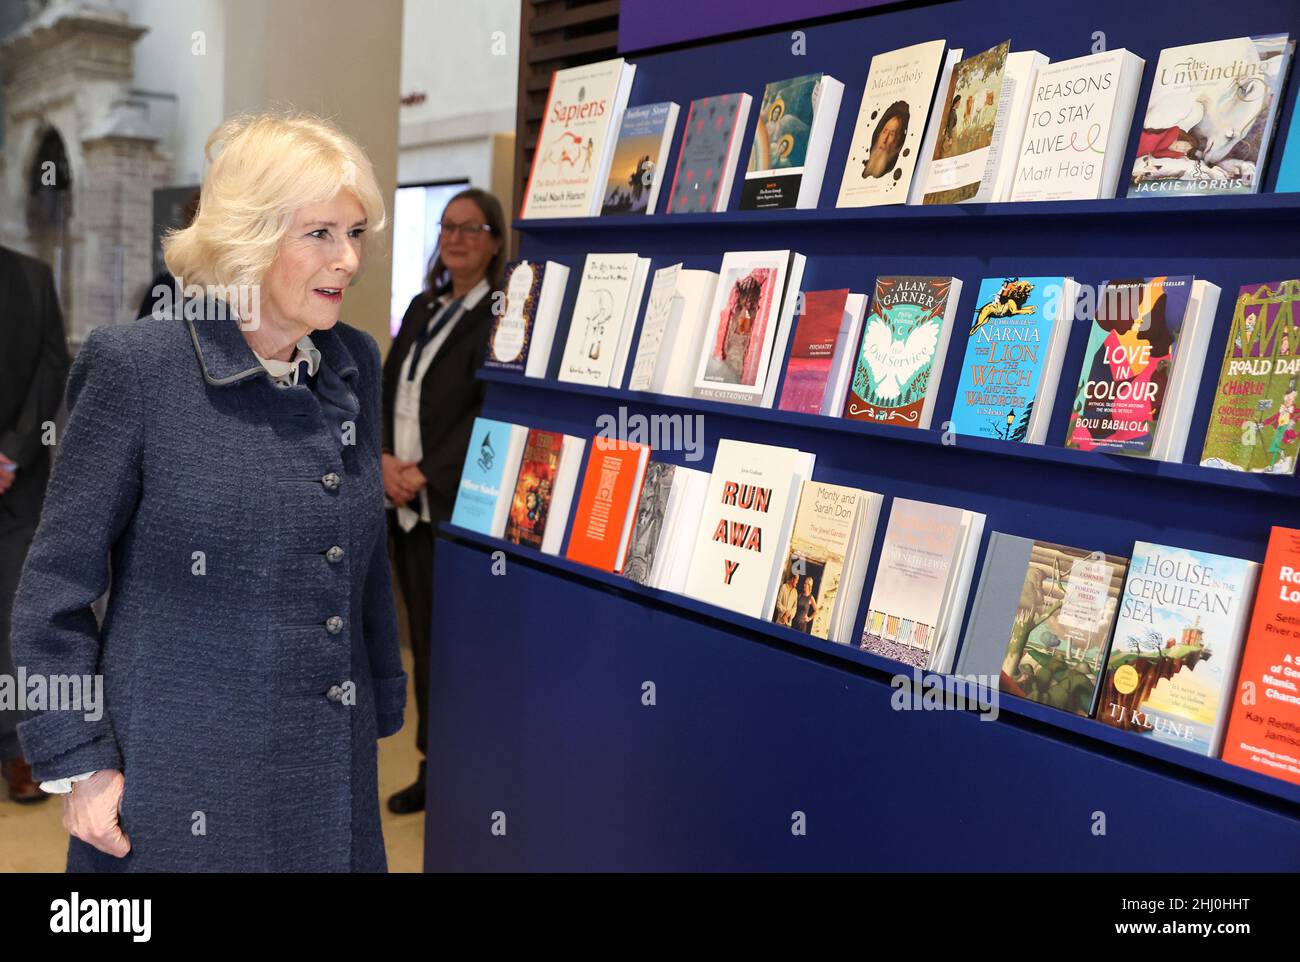 La duchesse de Cornwall lors d'une visite à la bibliothèque Bodleian de l'Université d'Oxford.Date de la photo: Mercredi 26 janvier 2022. Banque D'Images